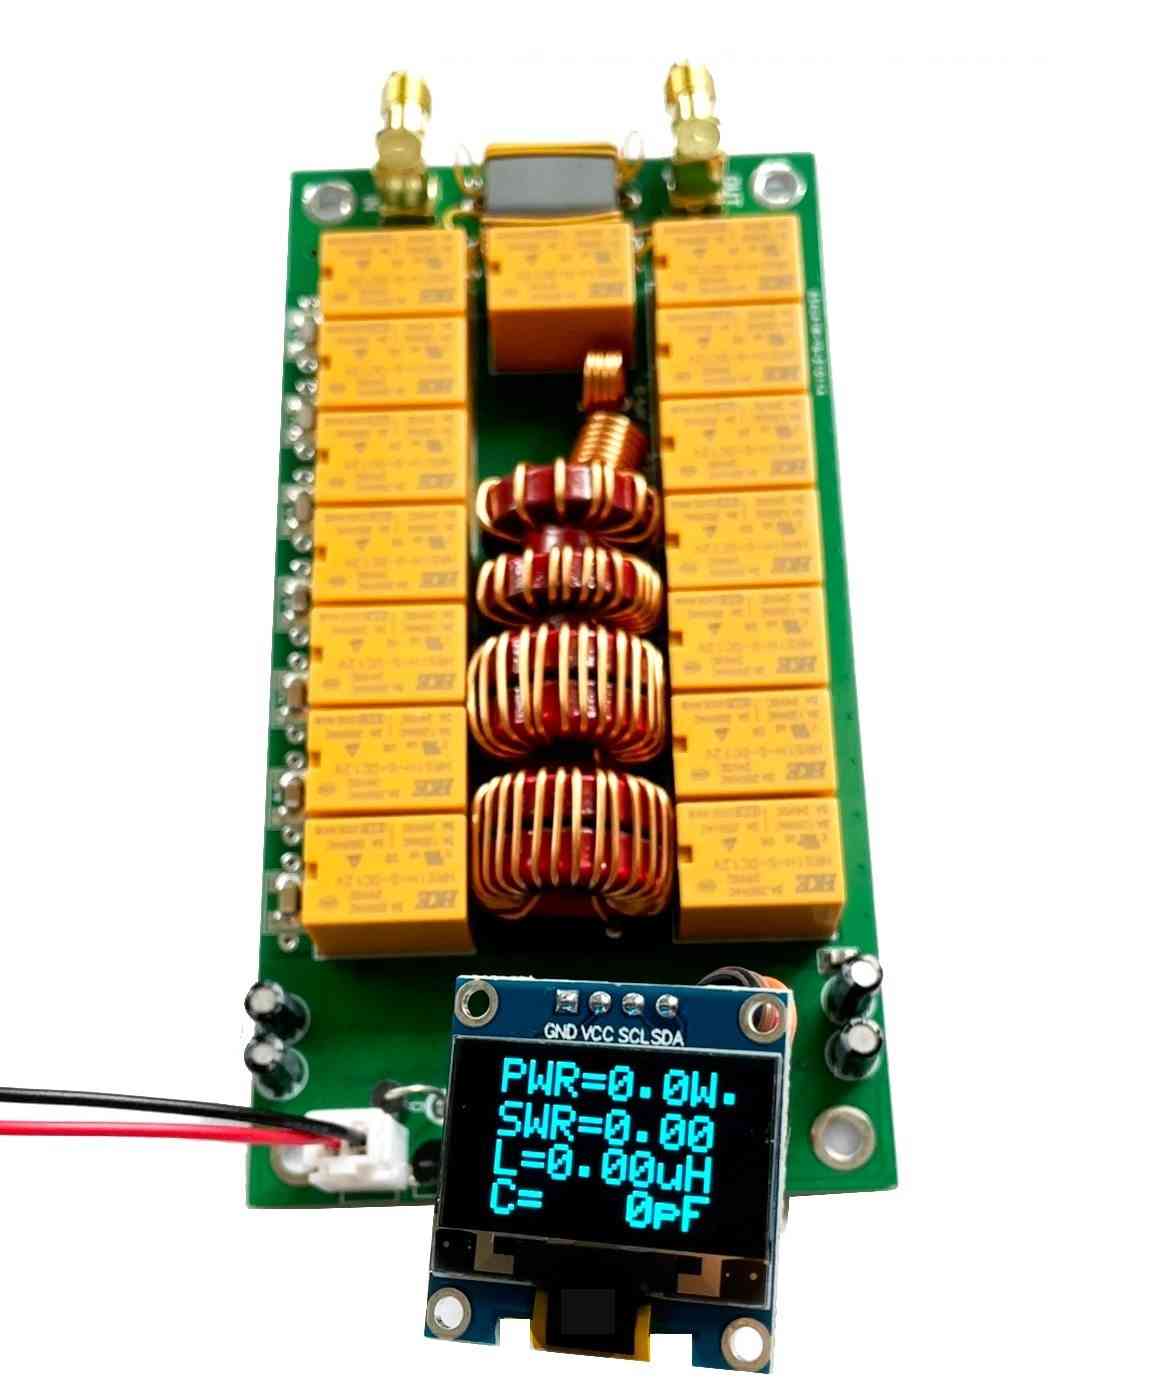 Atu-100 1.8-50mhz kit fai da te sintonizzatore d'antenna automatico da n7ddc 7x7 firmware programmato/smt/chip saldato